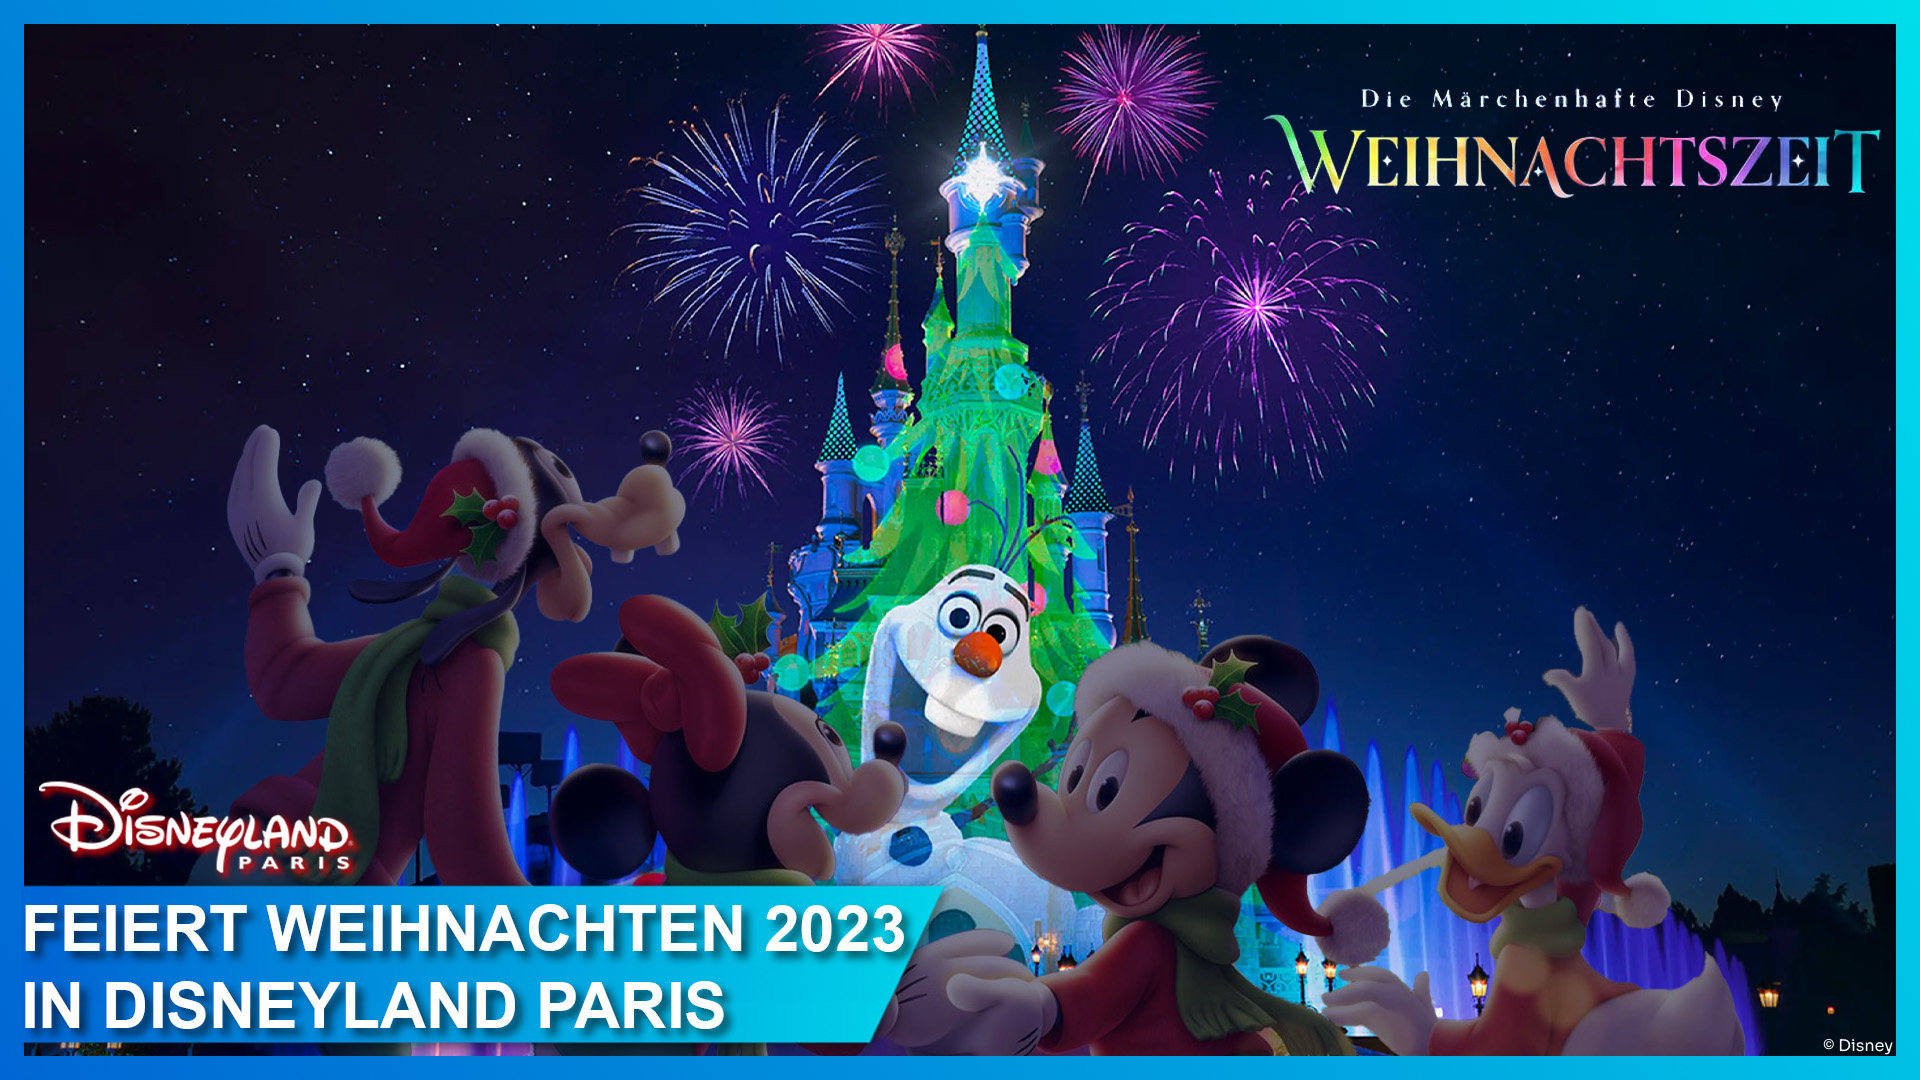 Weihnachten in Disneyland Paris: Alle Tipps und Tricks rund um Feuerwerk, Parade, Shows und mehr in unserem Christmas Guide 2023!